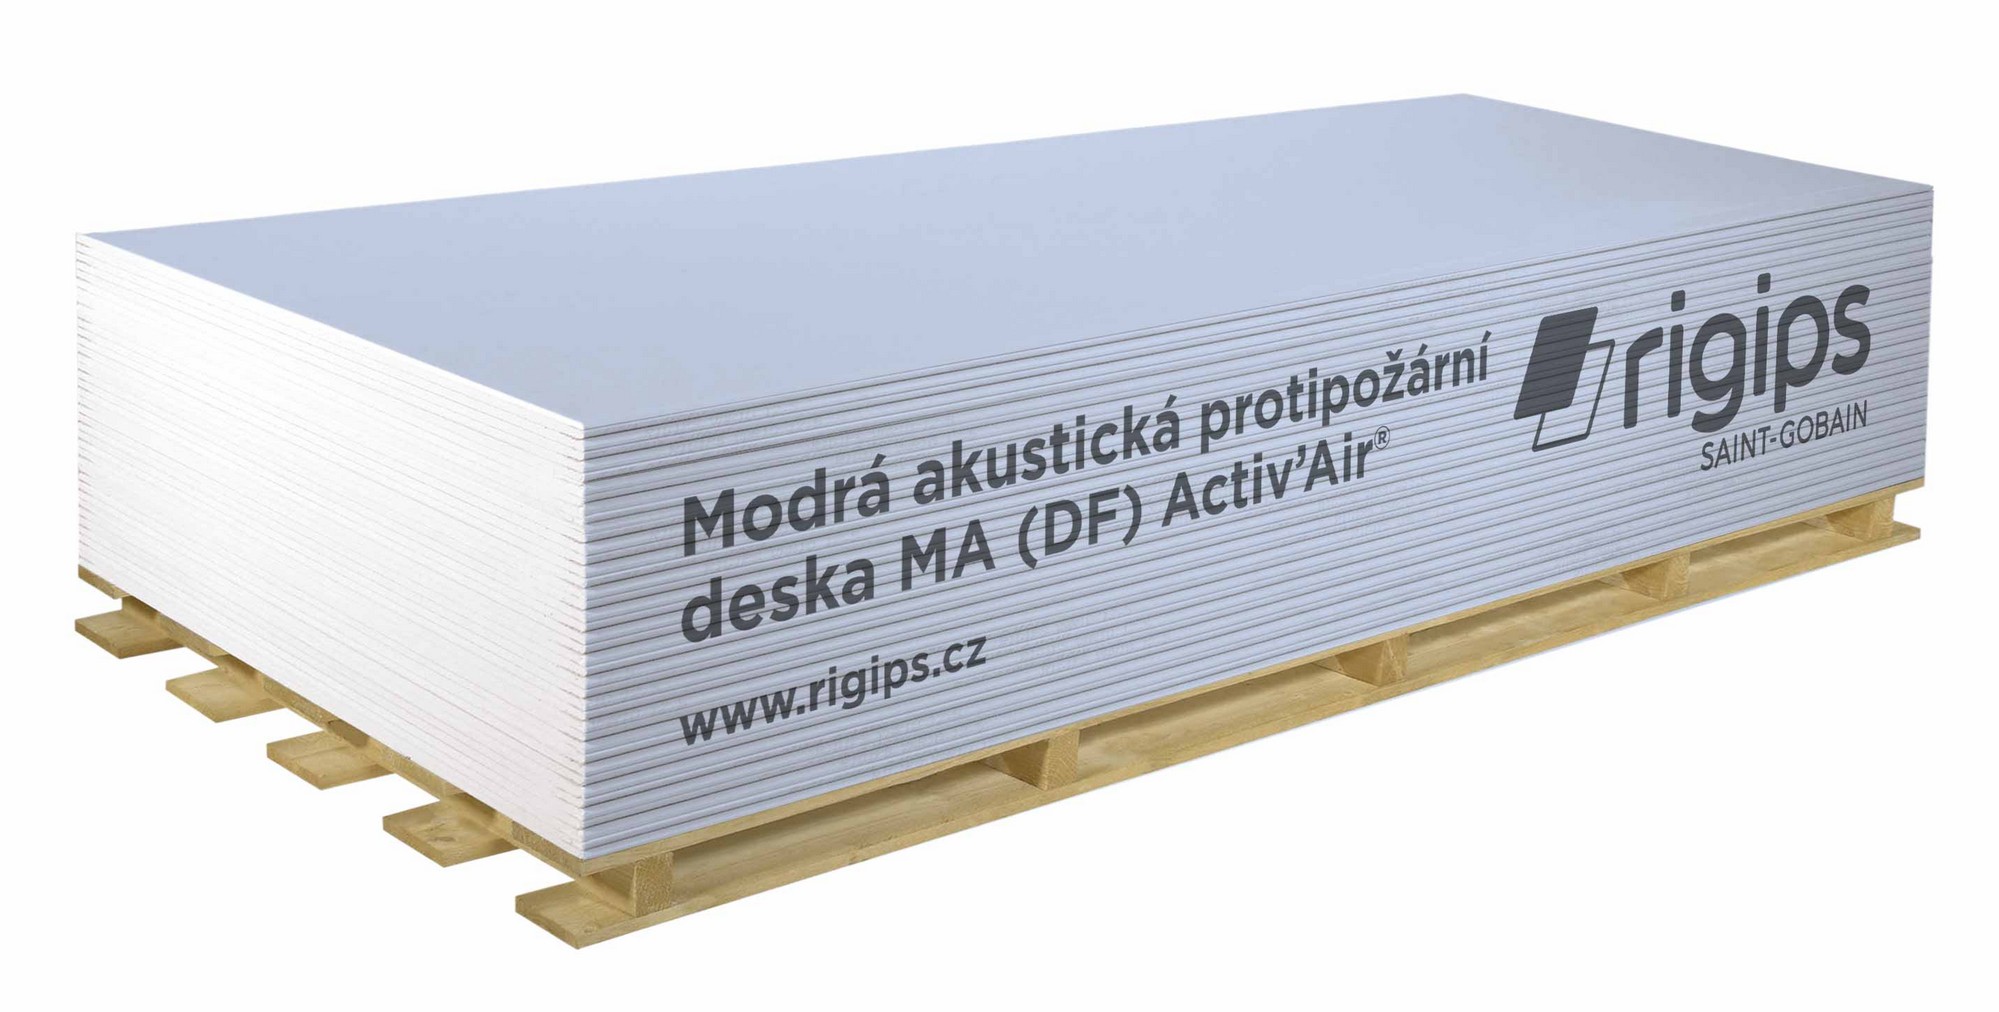 Deska sádrokartonová Rigips MA (DF) Activ' Air 12,5×1250×2750 mm